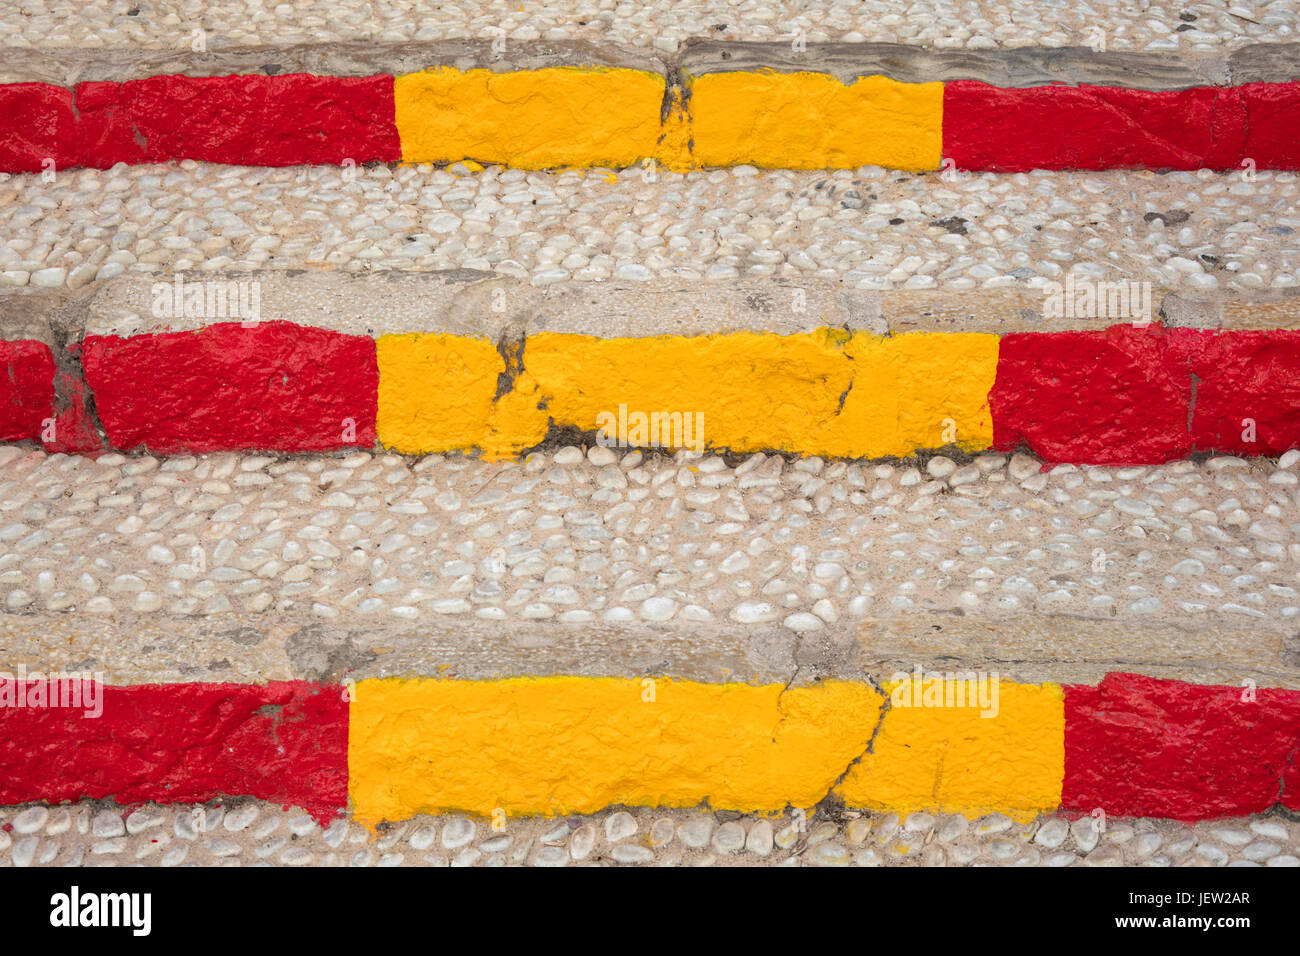 Détail de l'escalier de la rue méditerranéenne faite de pierres et peint aux couleurs du drapeau espagnol Banque D'Images